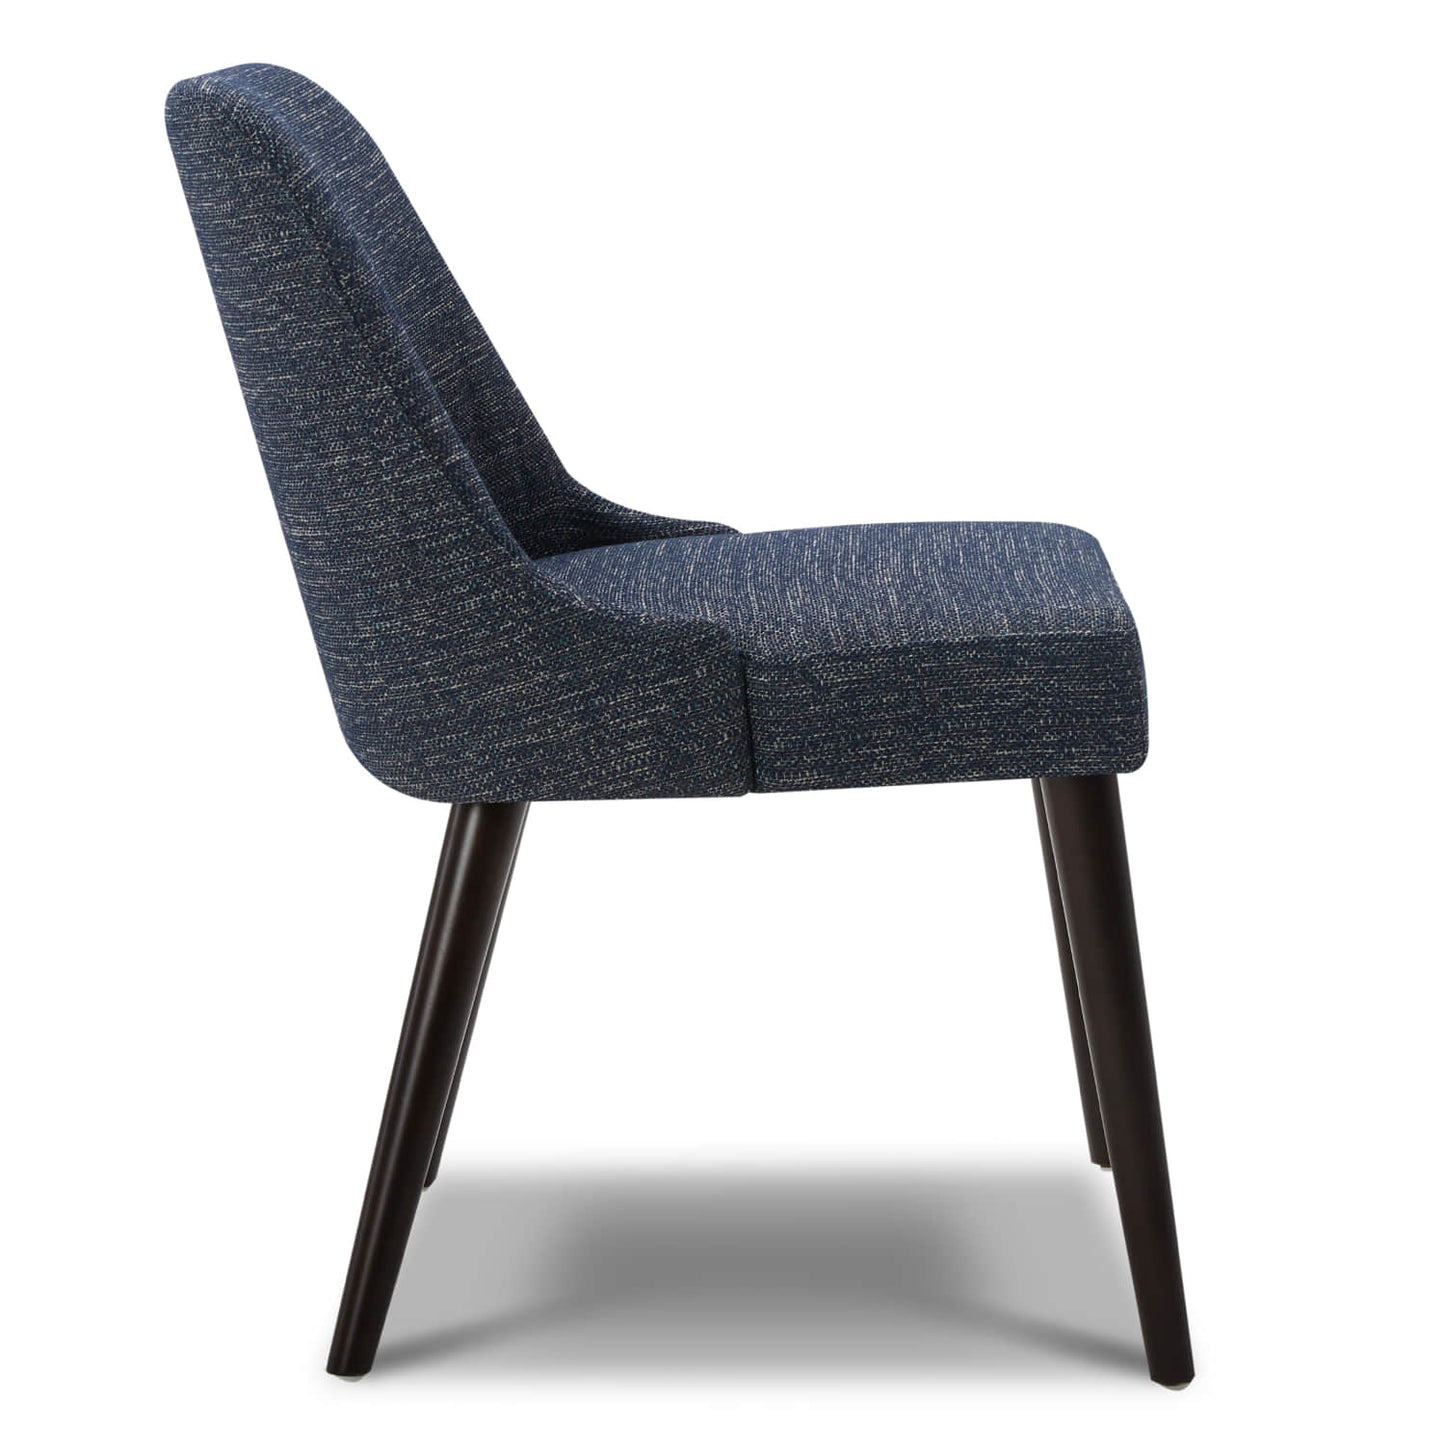 CHITA LIVING-Rhett Dining Chair (Set of 2)-Dining Chairs-Fabric-Dark Blue-